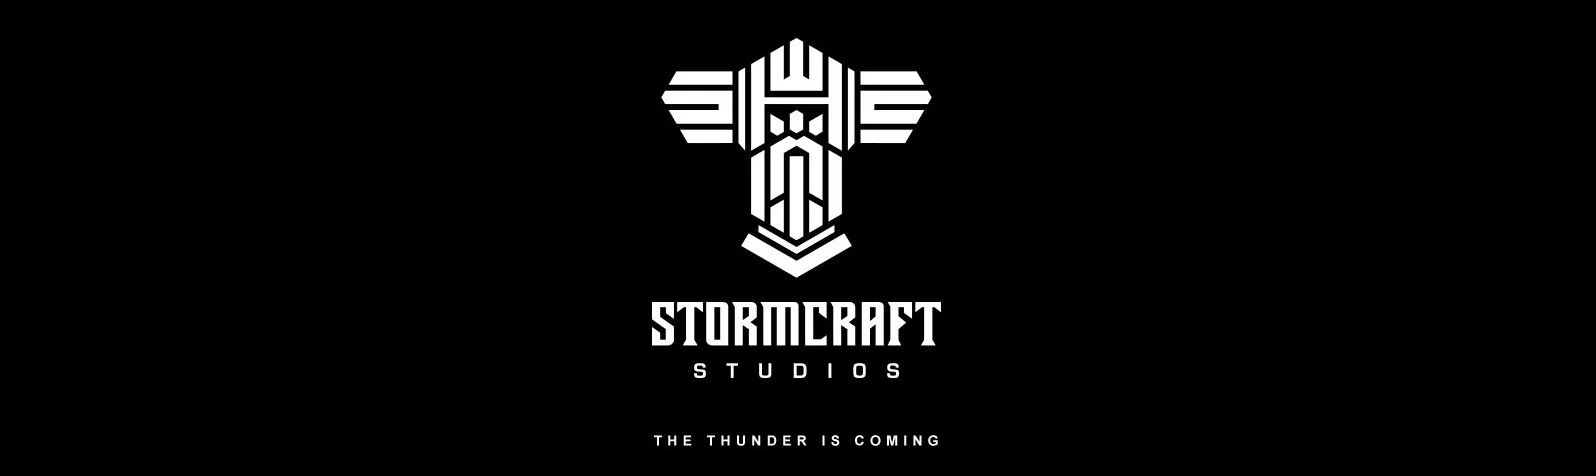 Stormcraft Studios Logo